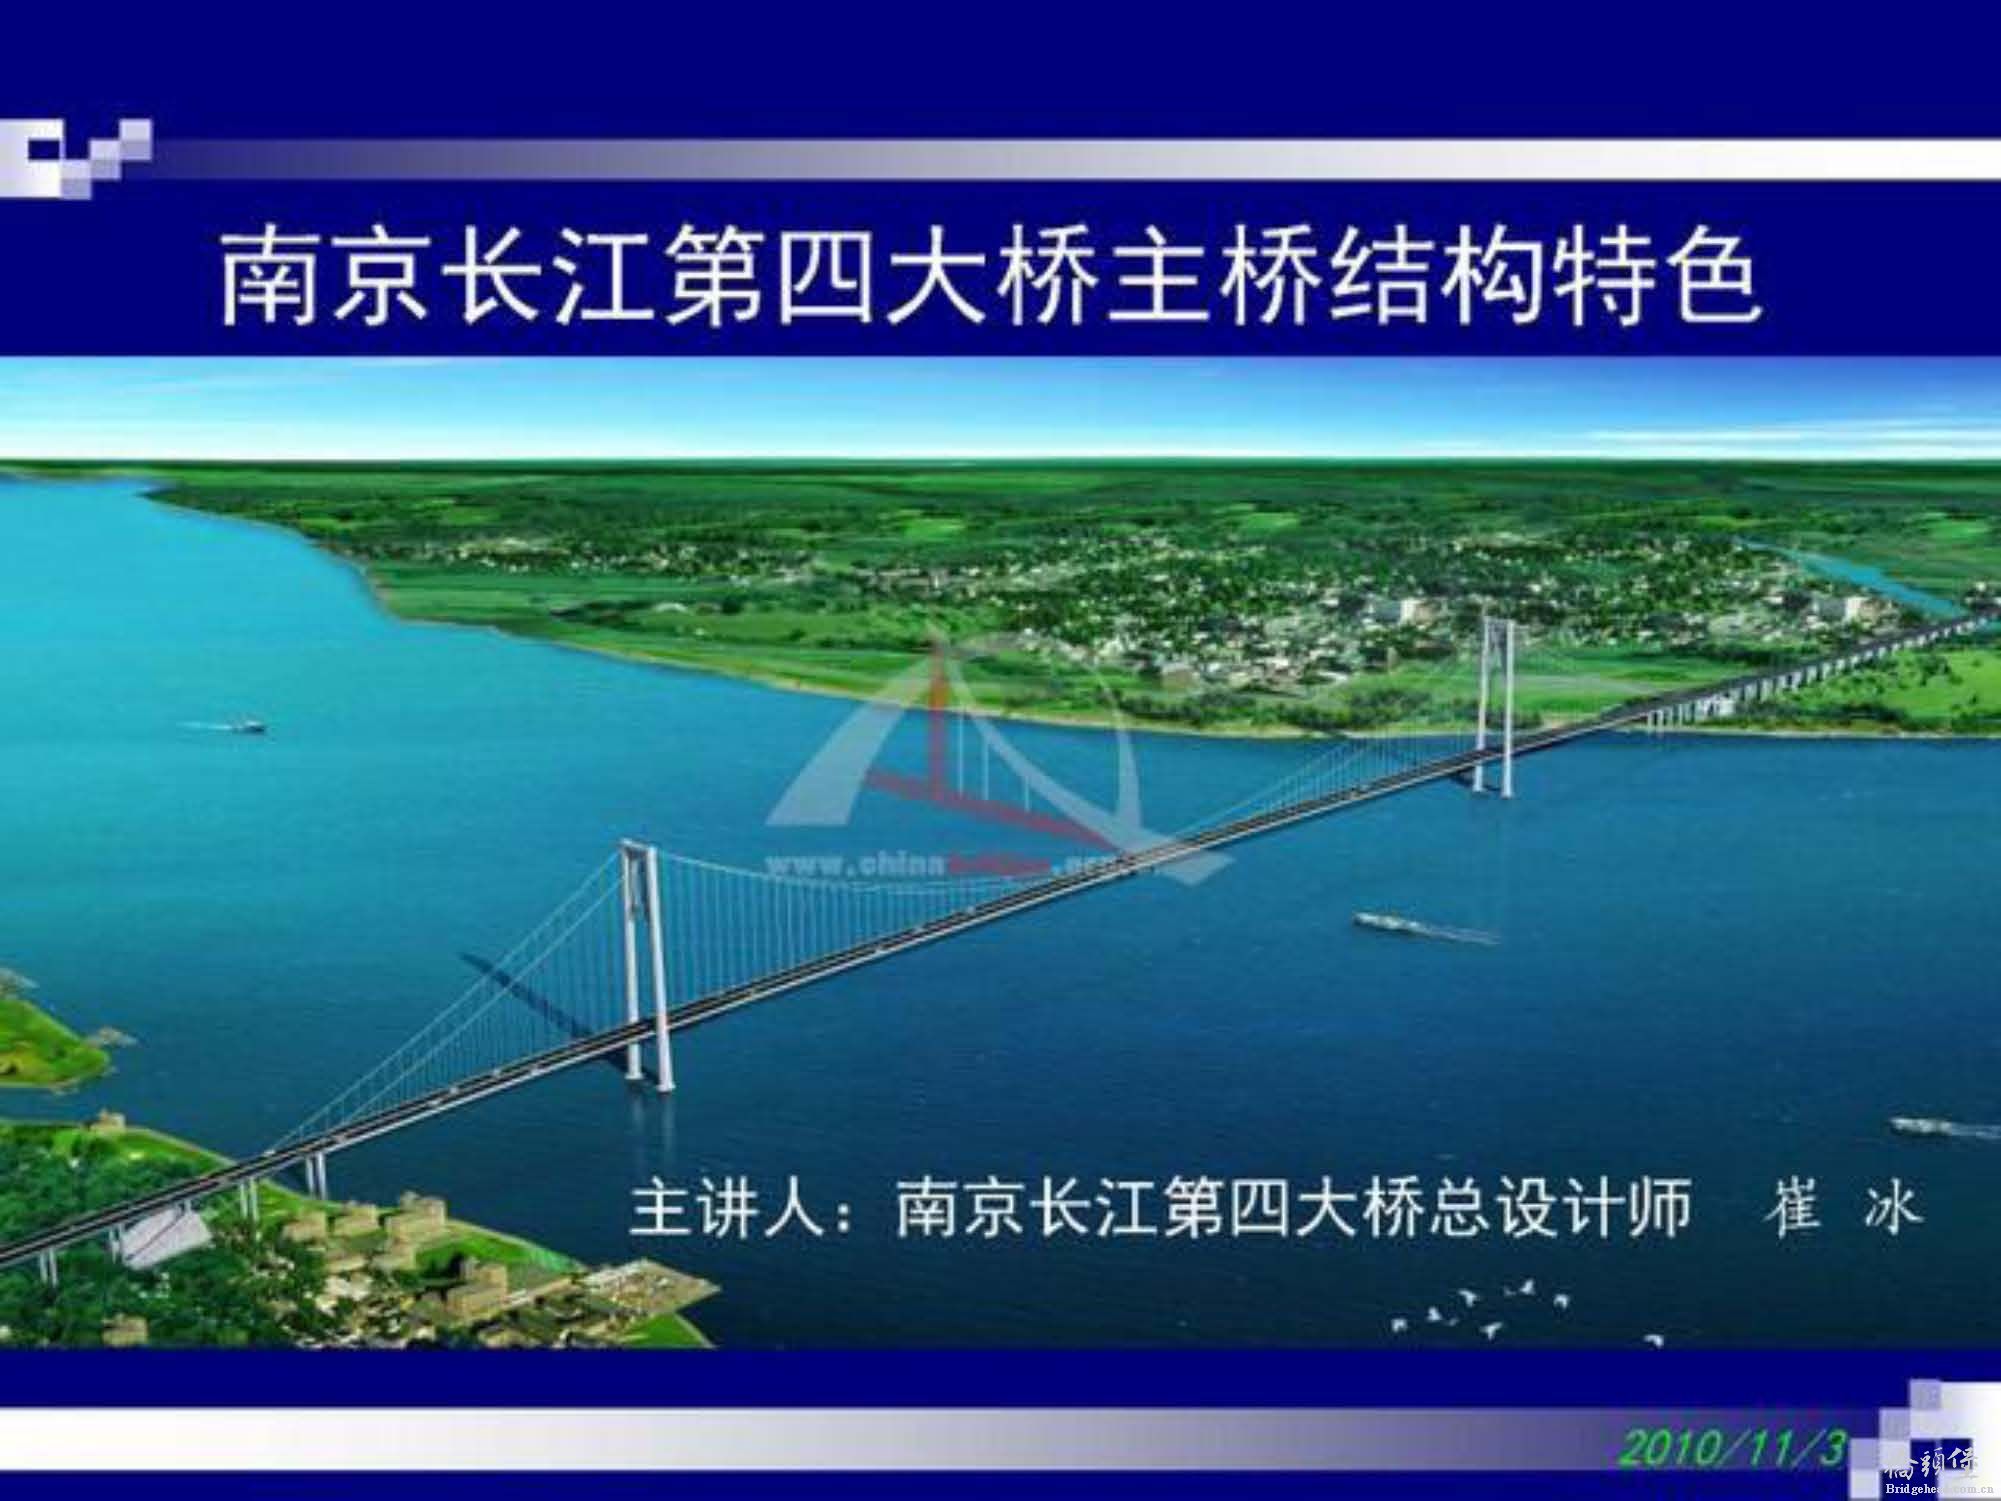 南京长江第四大桥主桥结构特色_页面_01.jpg